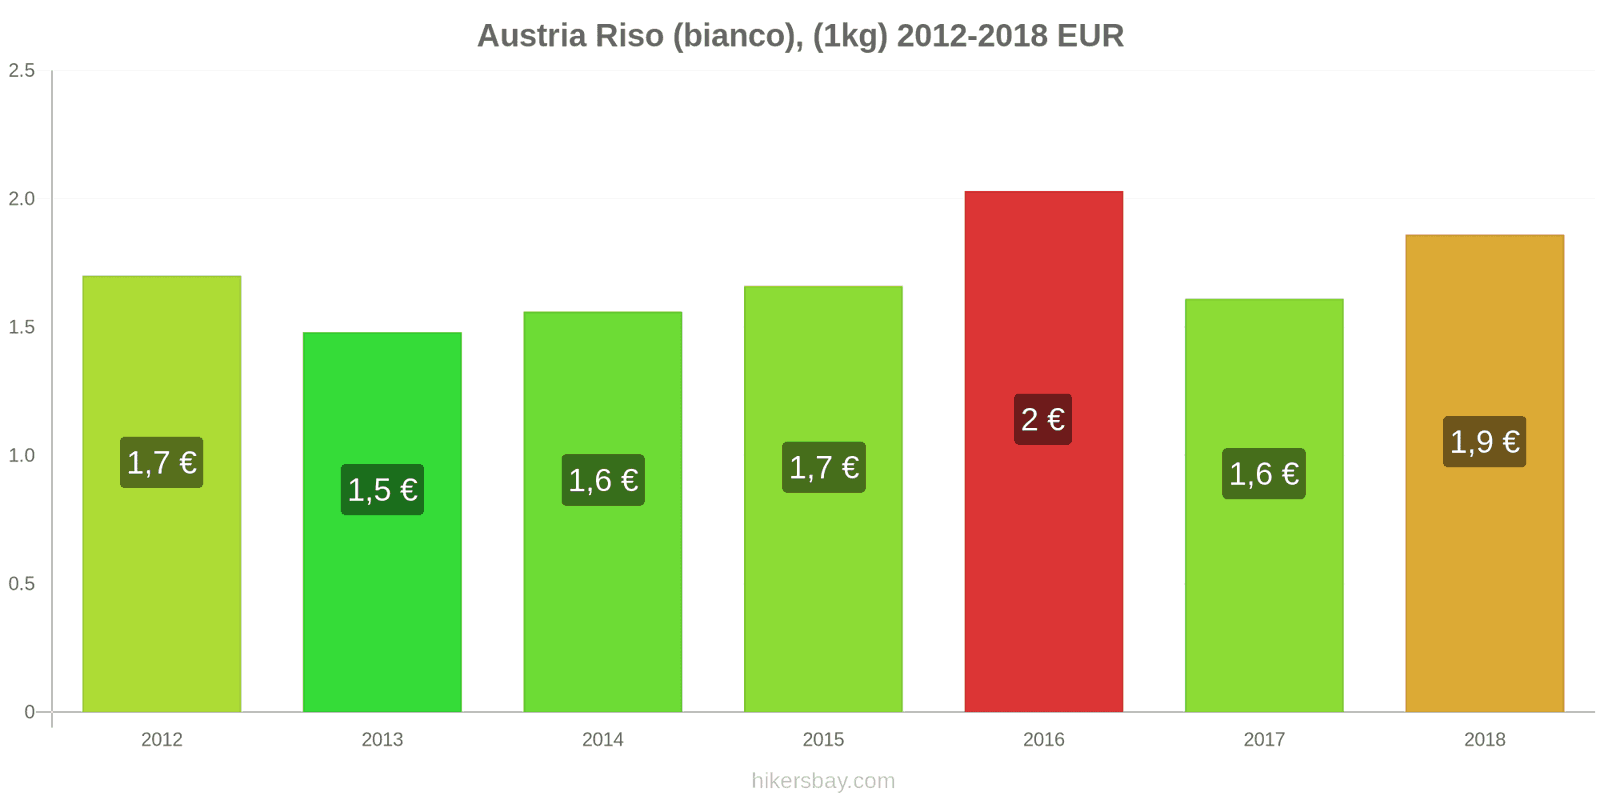 Austria cambi di prezzo Chilo di riso bianco hikersbay.com